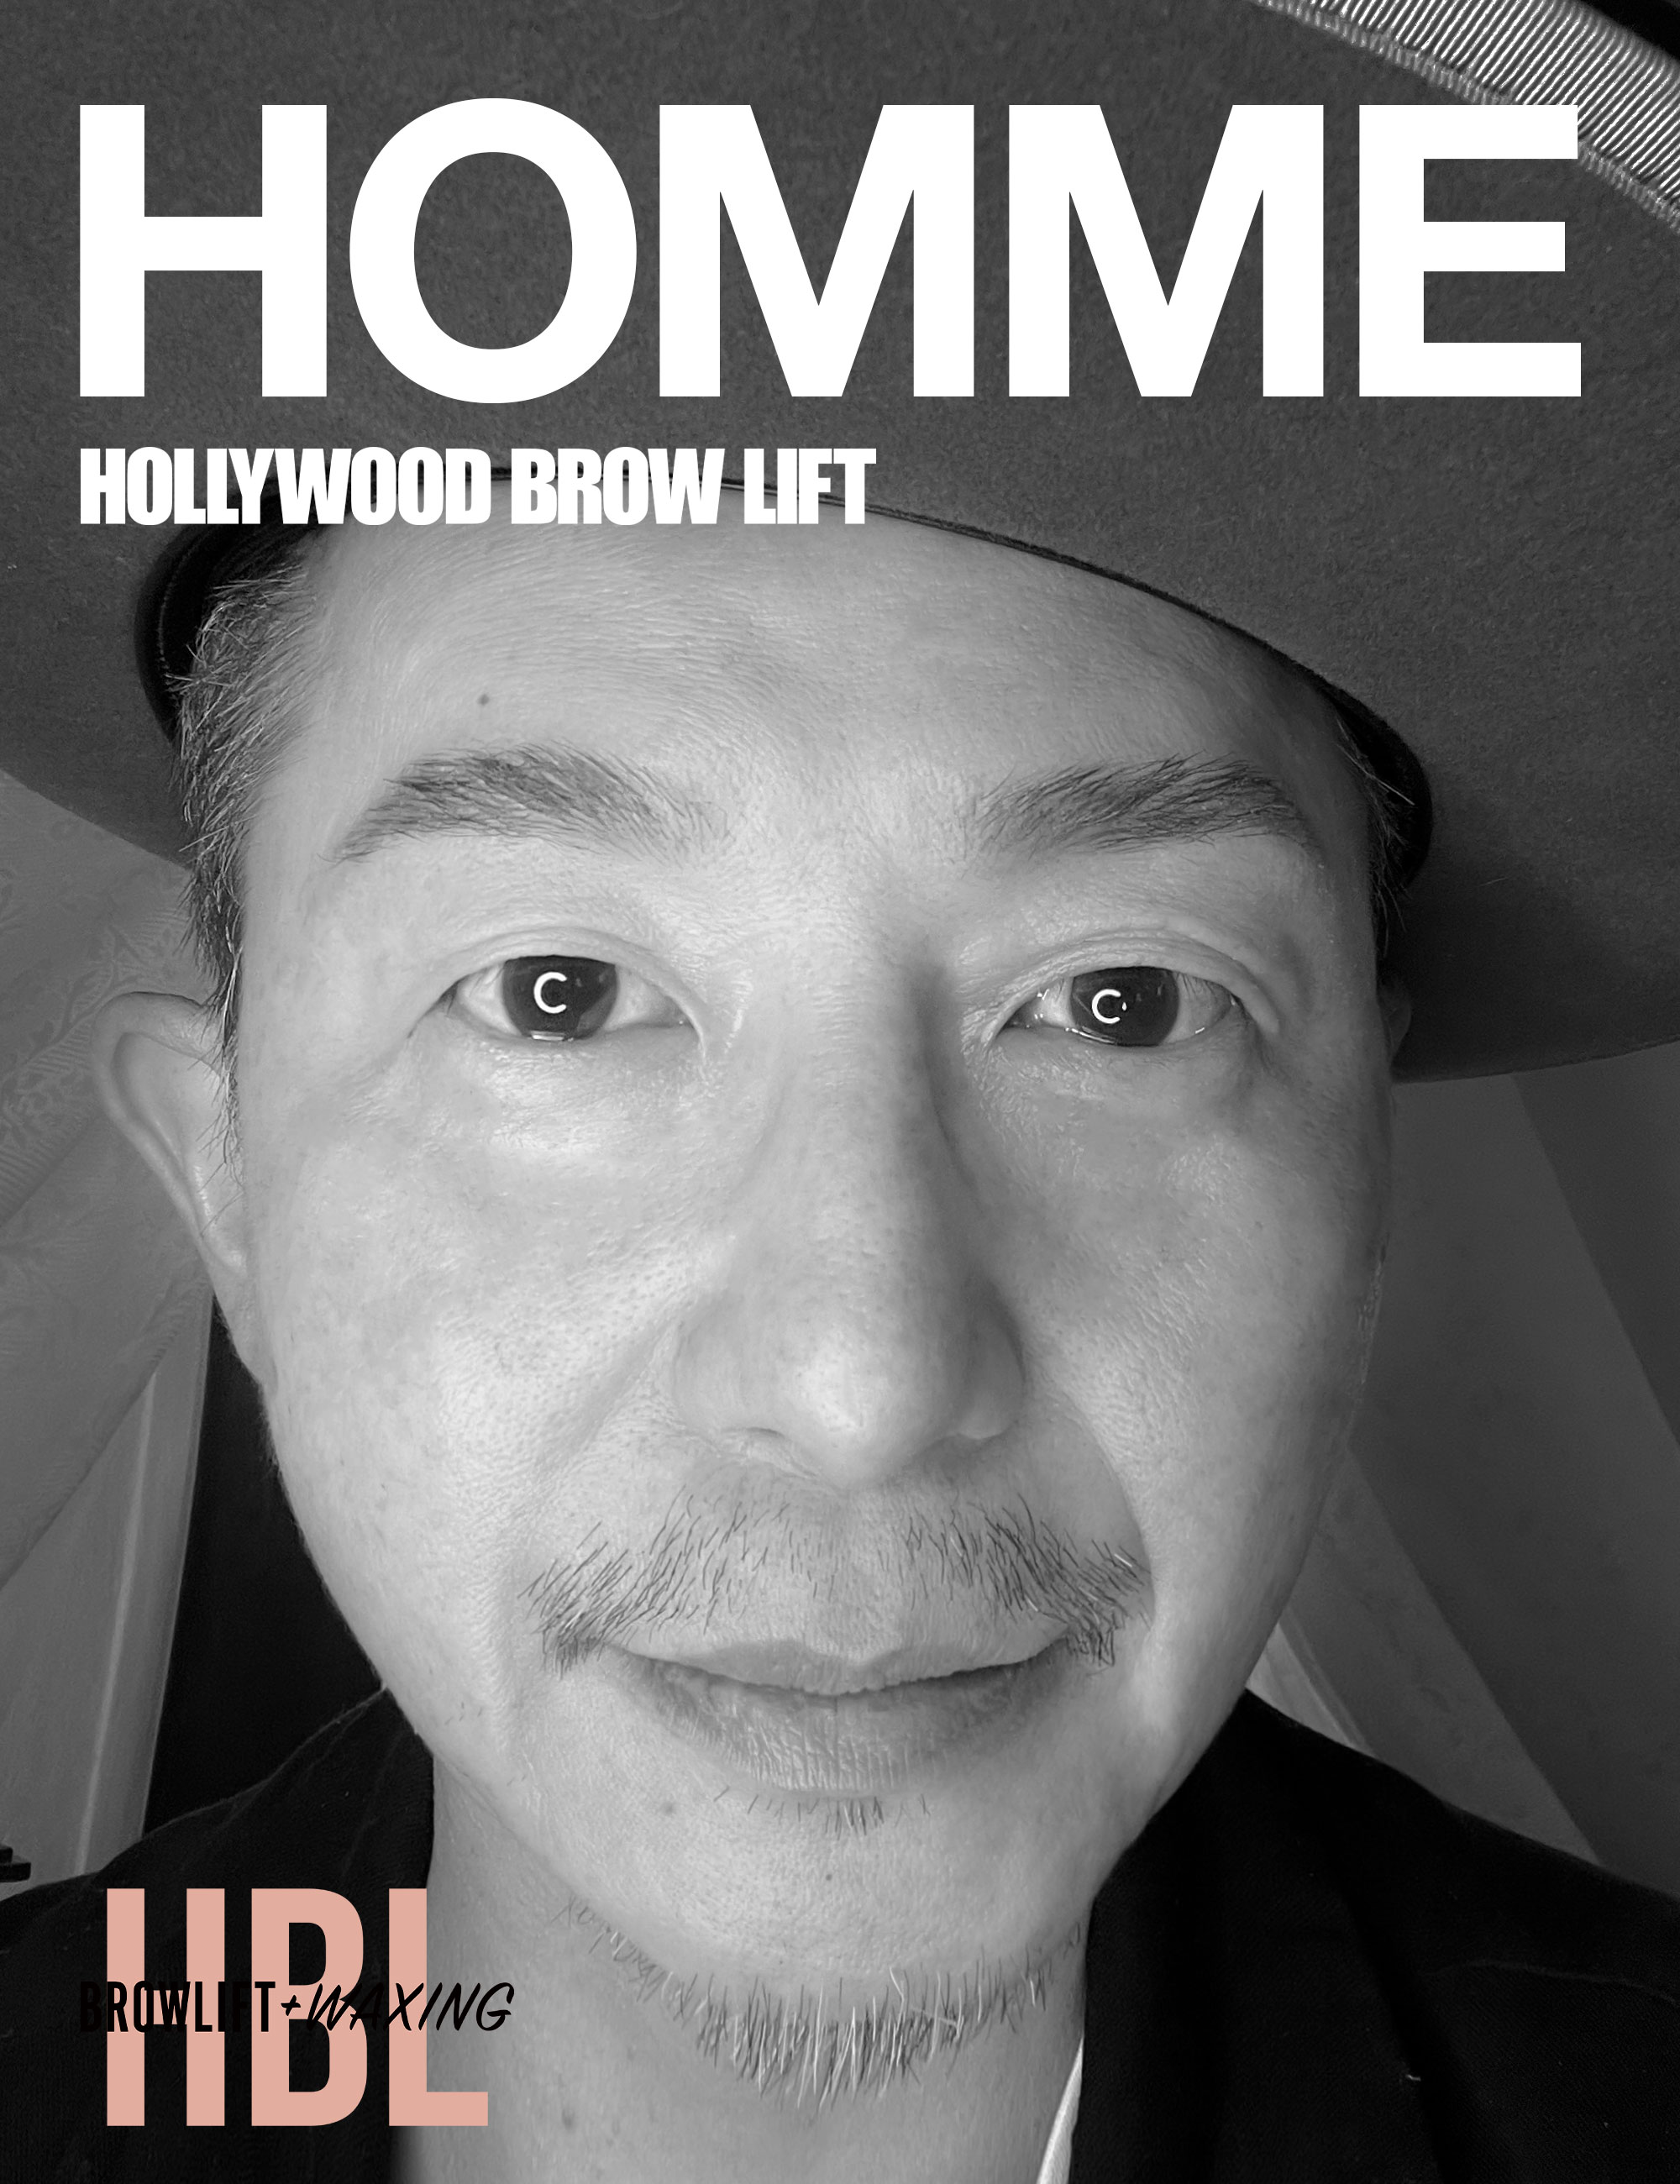 HBL HOMME / メンズ・ハリウッドブロウリフト